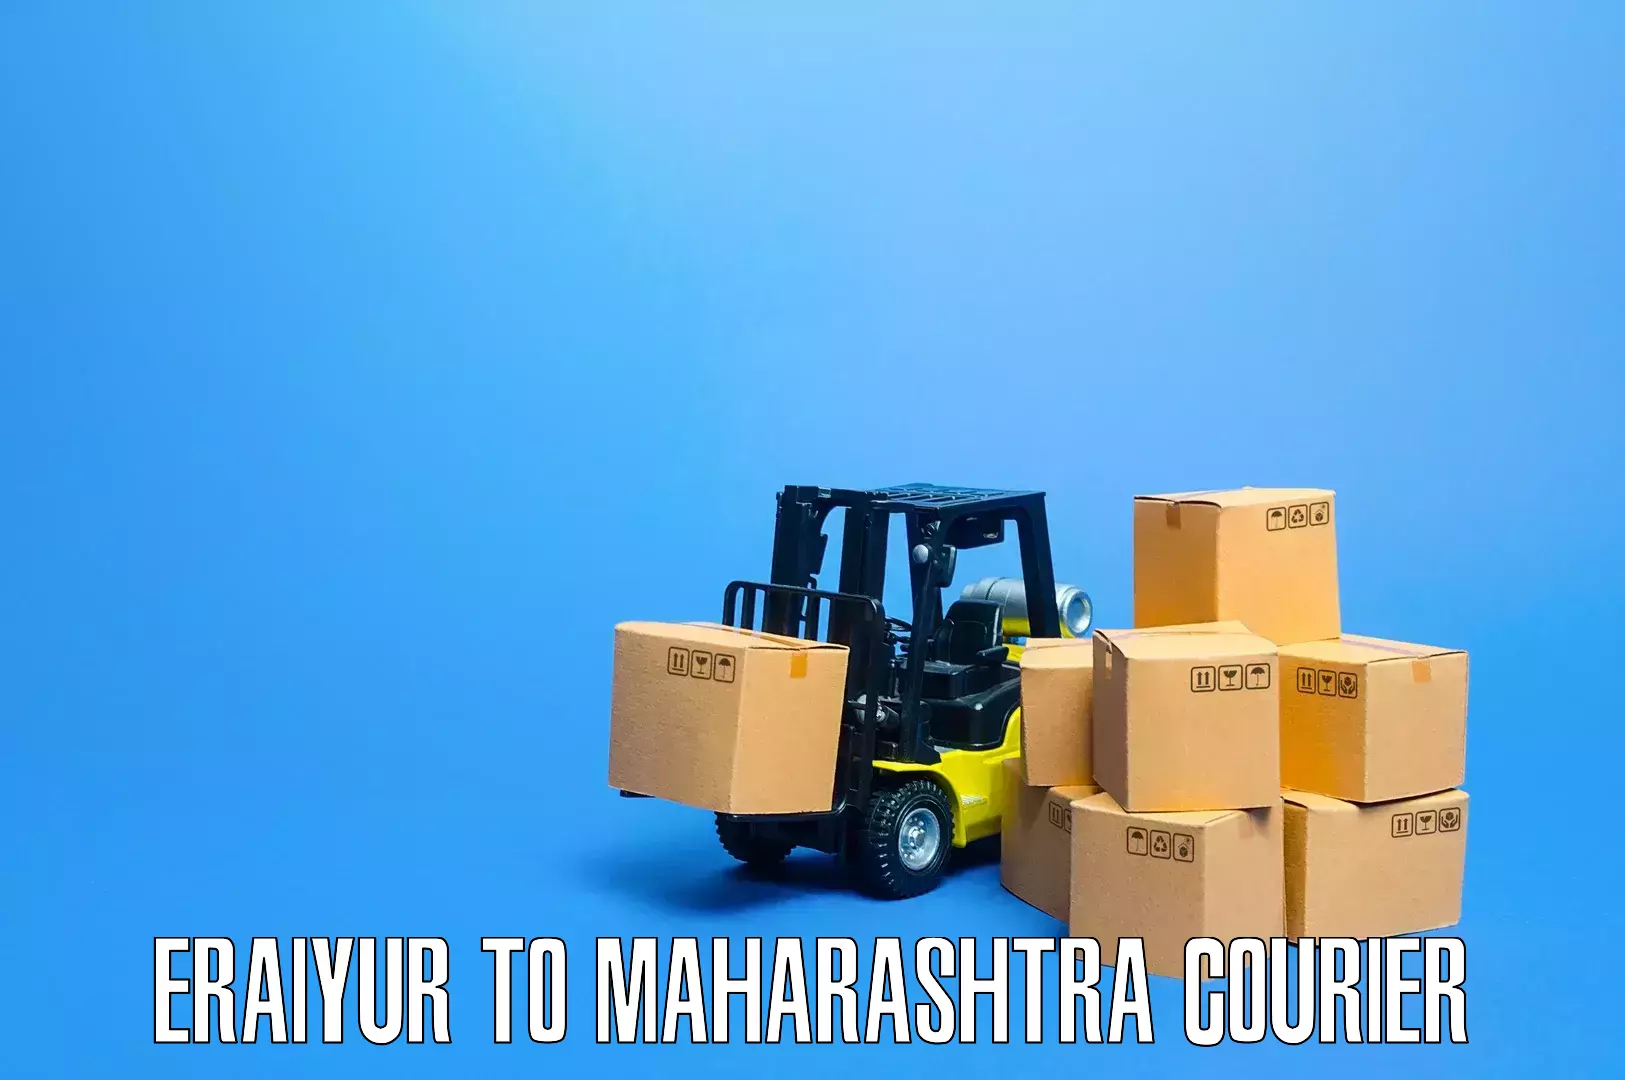 Furniture moving experts Eraiyur to Maharashtra